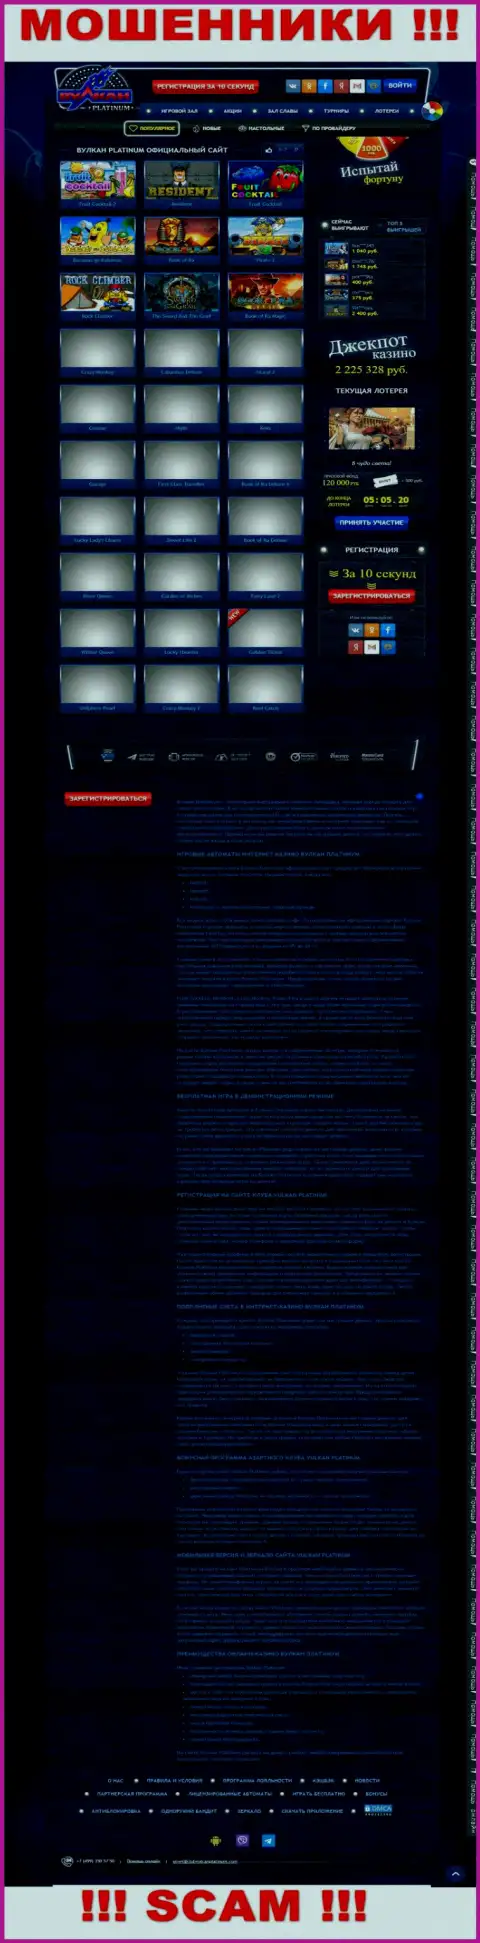 Скрин официального сайта Vulcan Platinum - ClubVulcanPlatinum Com